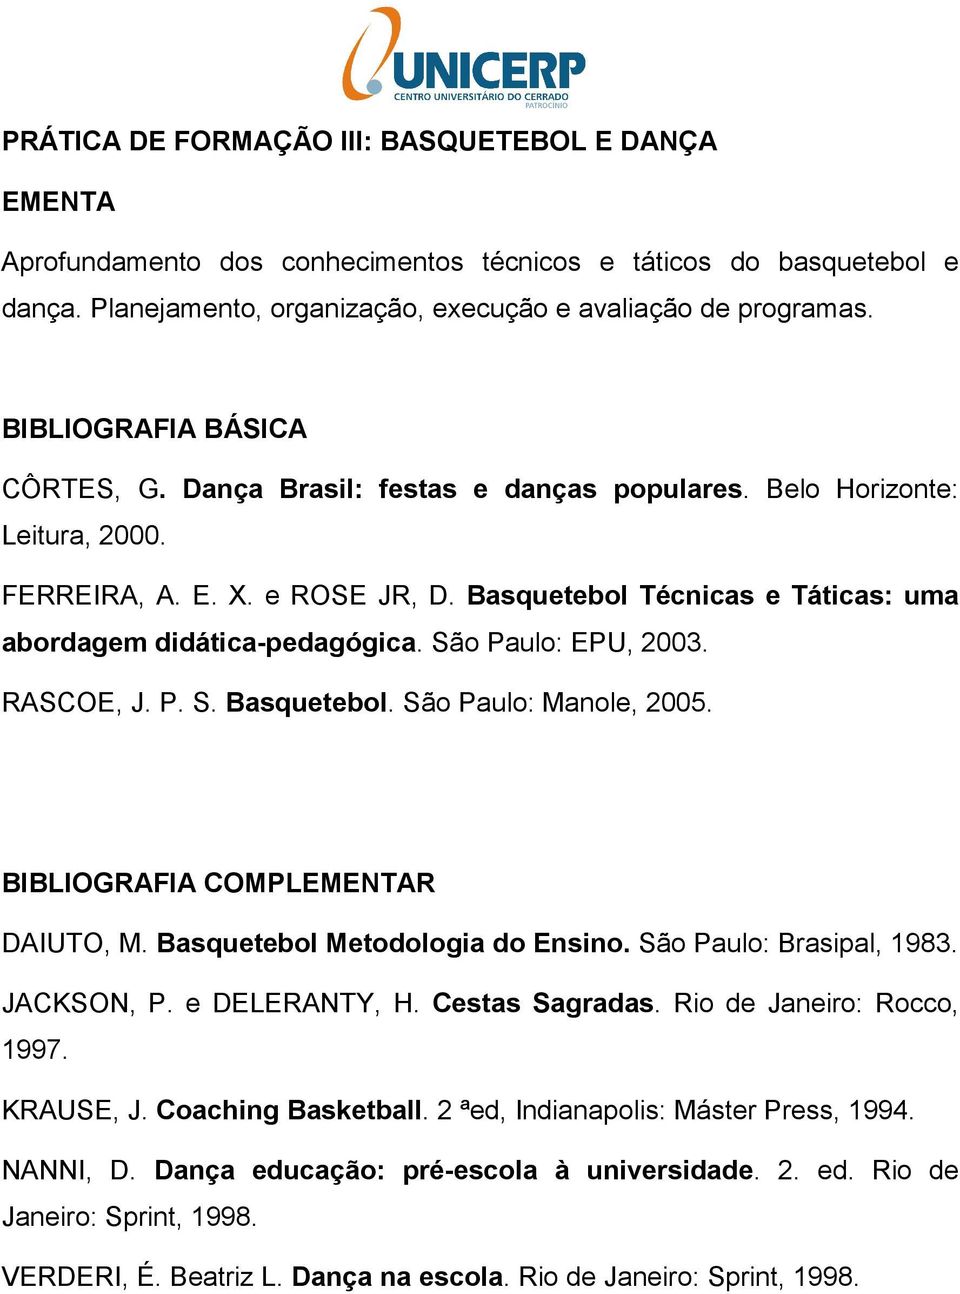 RASCOE, J. P. S. Basquetebol. São Paulo: Manole, 2005. BIBLIOGRAFIA COMPLR DAIUTO, M. Basquetebol Metodologia do Ensino. São Paulo: Brasipal, 1983. JACKSON, P. e DELERANTY, H. Cestas Sagradas.